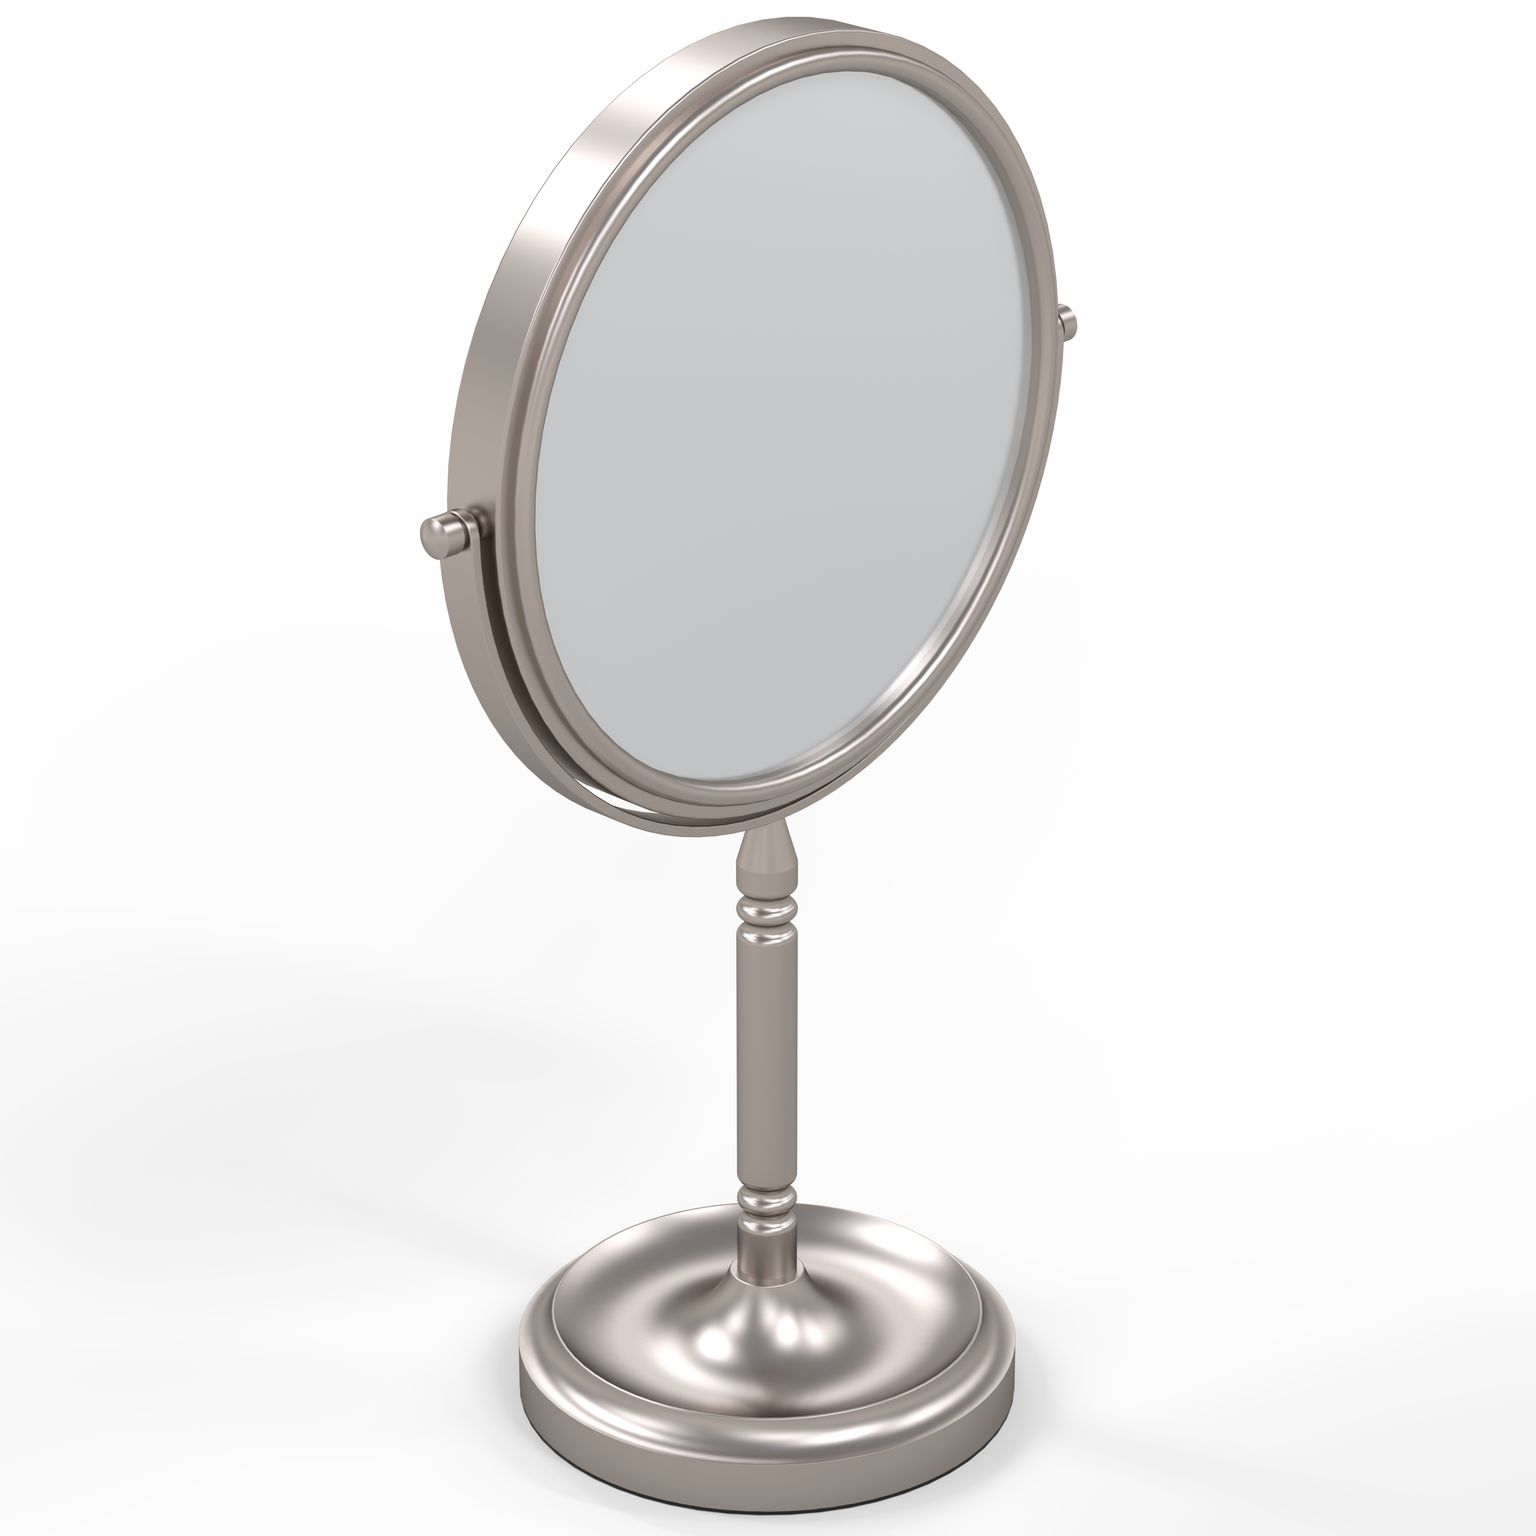 Aptations 86675 Recessed Base Vanity Mirror In Brushed Nickel 86675 - Br. Nickel